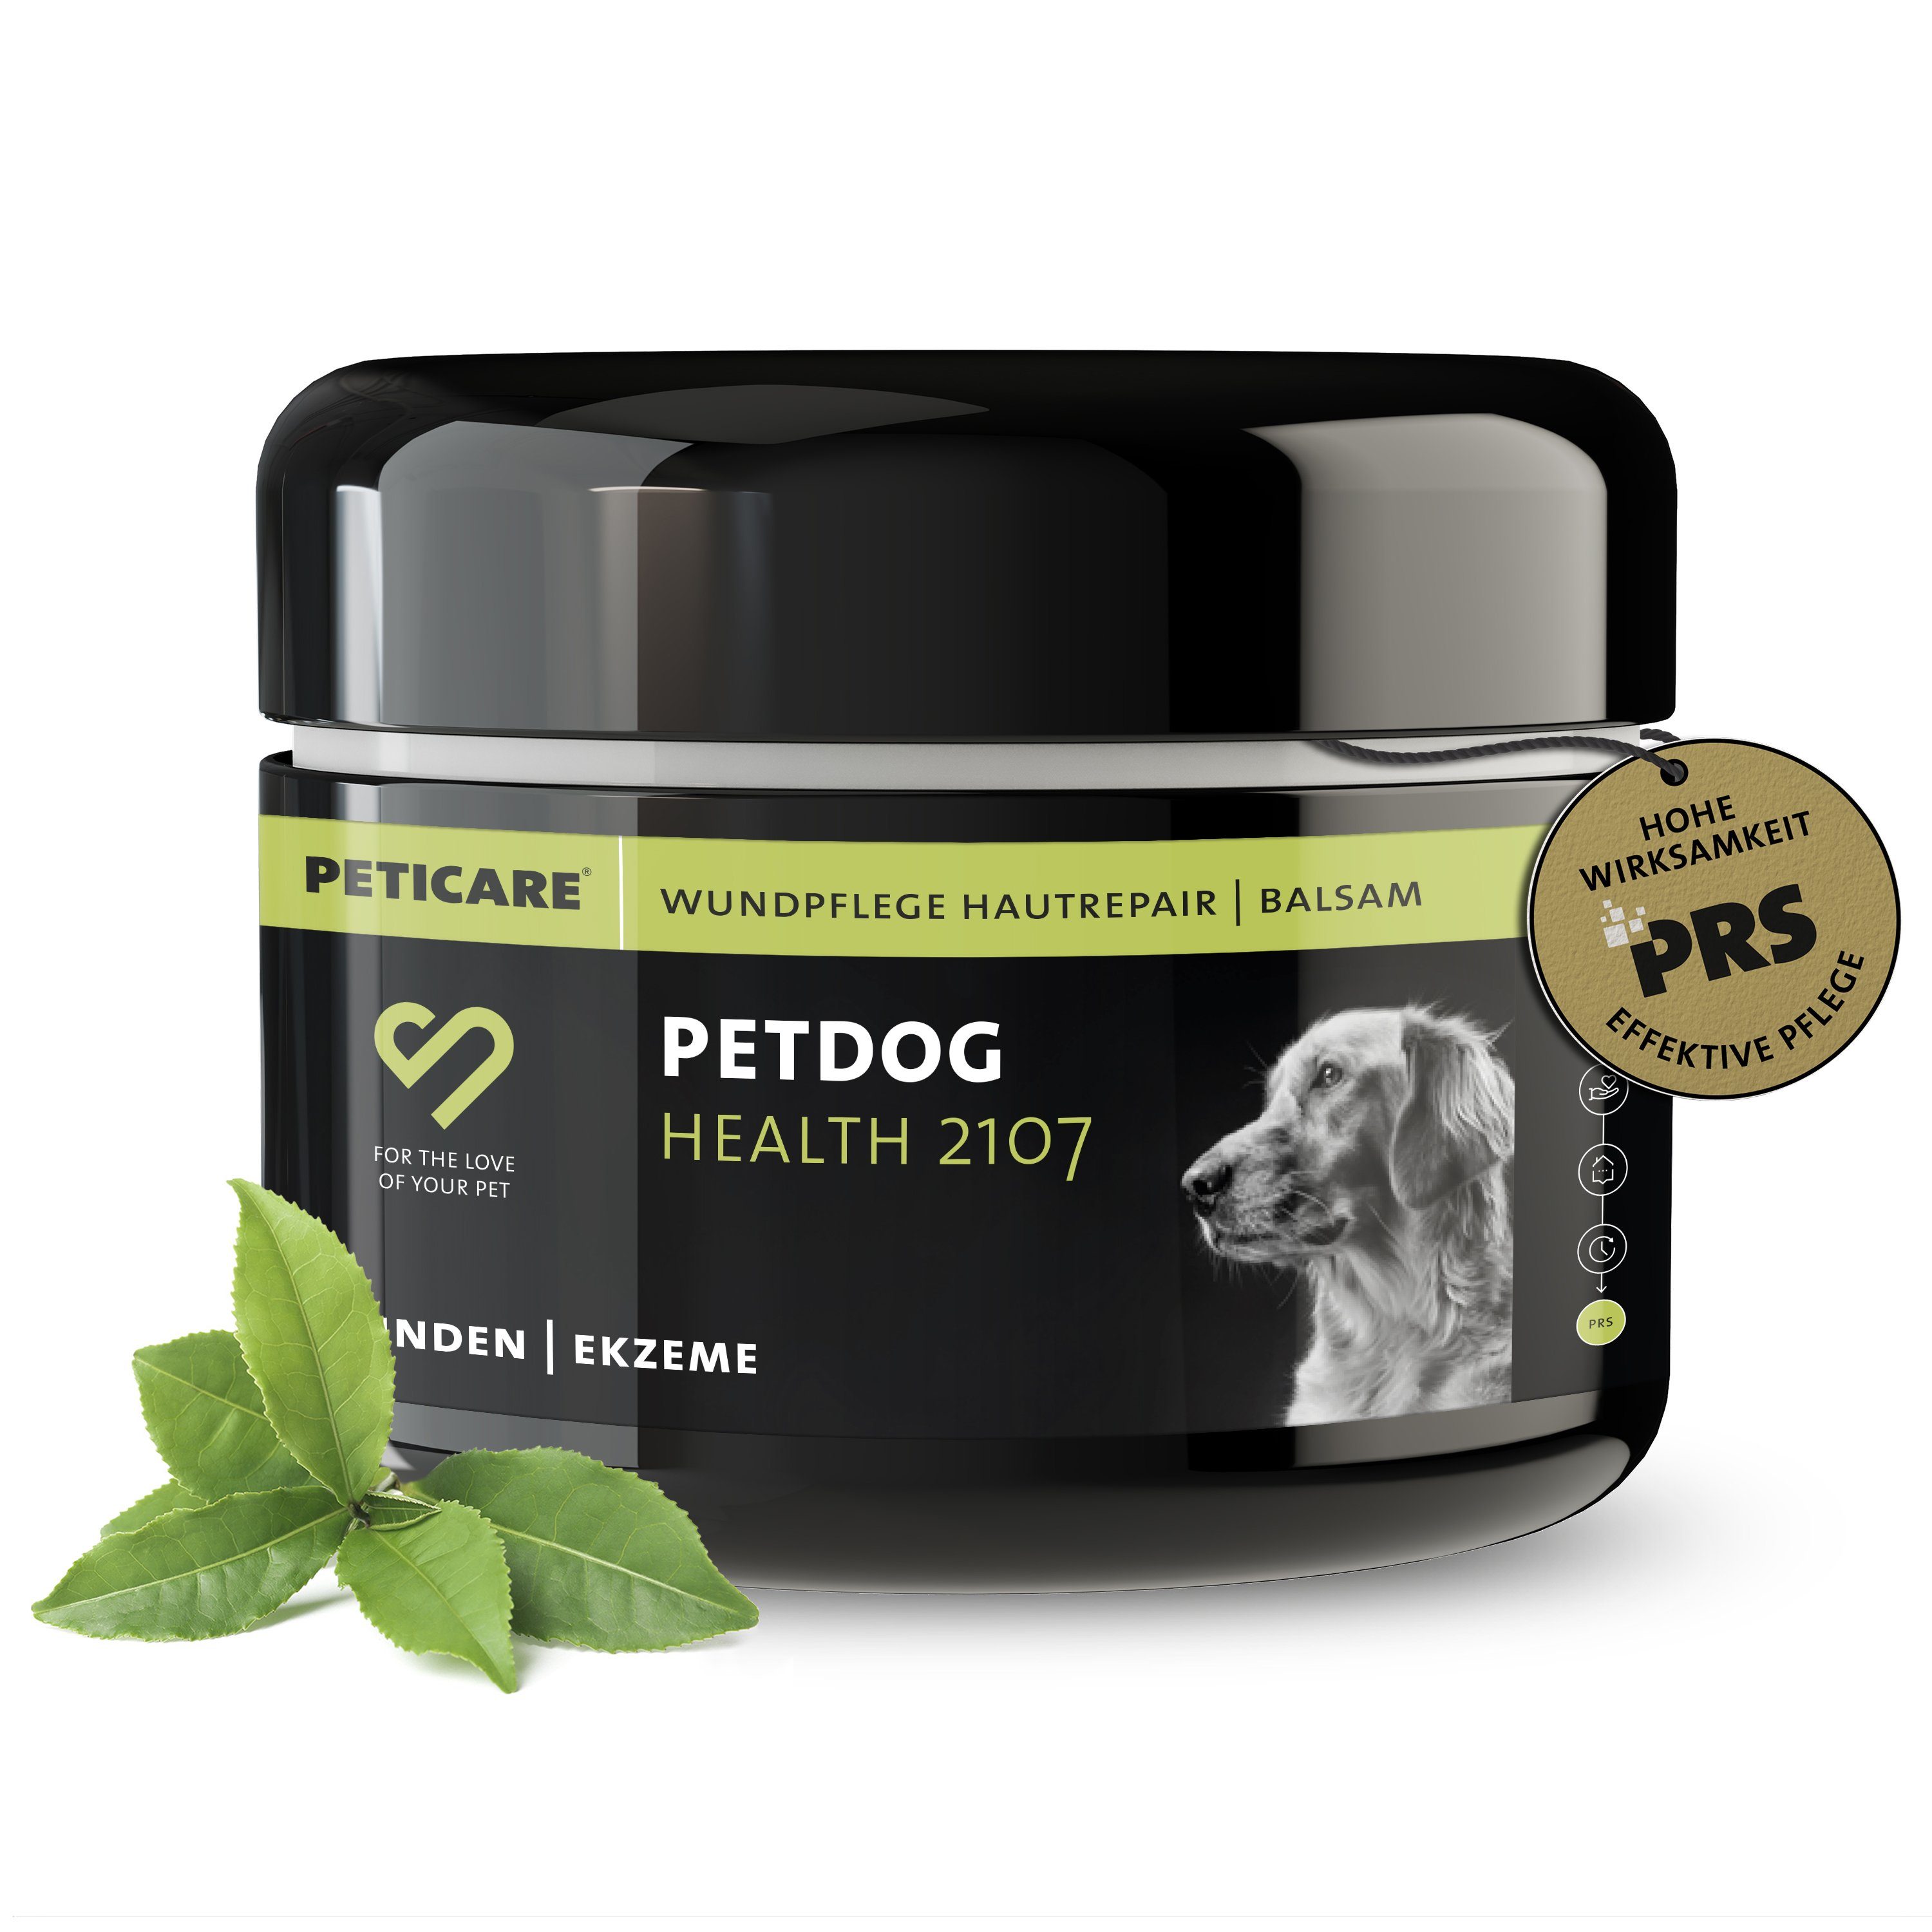 Peticare Paraffinwachs Haut-Repair, Wund-Balsam für Haustiere - petDog Health 2107